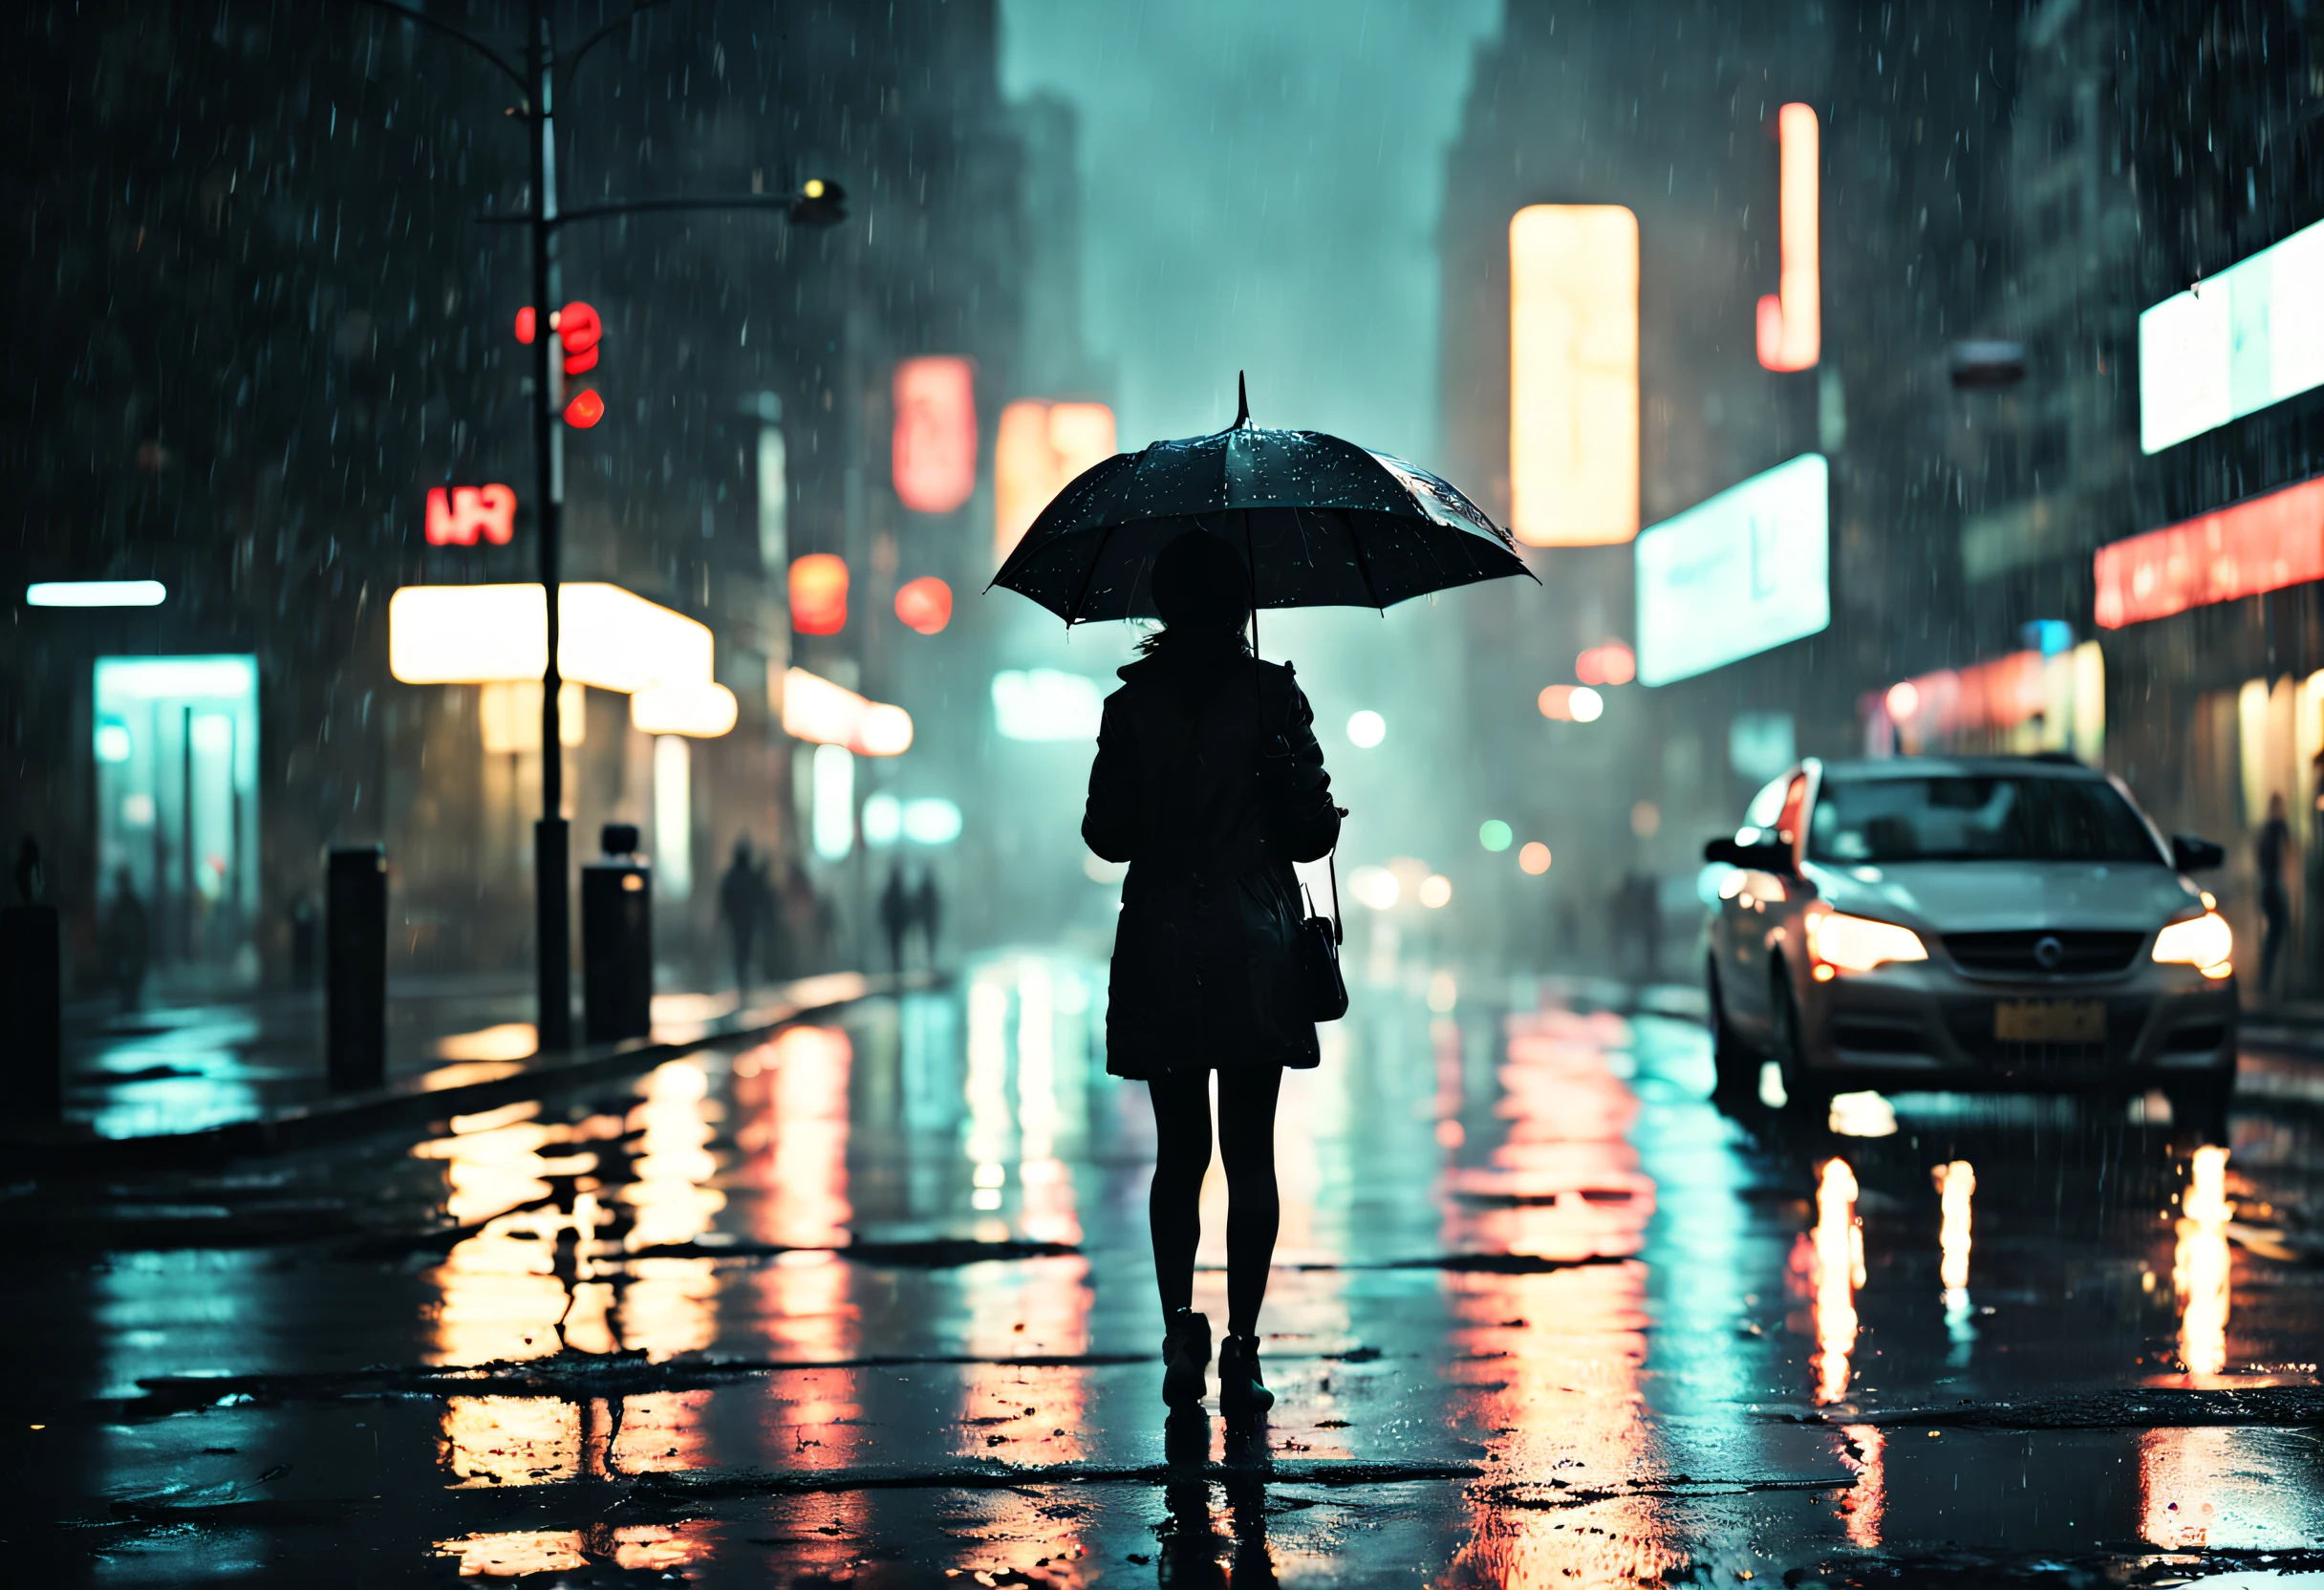 Девушка стоит под капающим зонтиком на тускло освещенной улице,капли дождя блестят на мокром асфальте,теплый свет, исходящий от уличных фонарей,отражения неоновых вывесок в лужах,люди спешат с зонтиками, звук капель дождя, падающих на зонтик, мокрые листья разбросаны по земле, туманная атмосфера, силуэт девушки, освещенный уличными фонарями, rainy городской пейзаж at night, Кинематографическое и капризное освещение, драматический контраст между светом и тьмой, ощущение тайны и одиночества, влажные и блестящие текстуры, холодная и ненасыщенная цветовая палитра, импрессионистический и мечтательный художественный стиль. (Лучшее качество, 4k, ультрадетализированный, реалистичный:1.37), дождливая ночь, городской пейзаж, кинематографическое освещение, мокрые текстуры, угрюмая атмосфера, импрессионистический художественный стиль